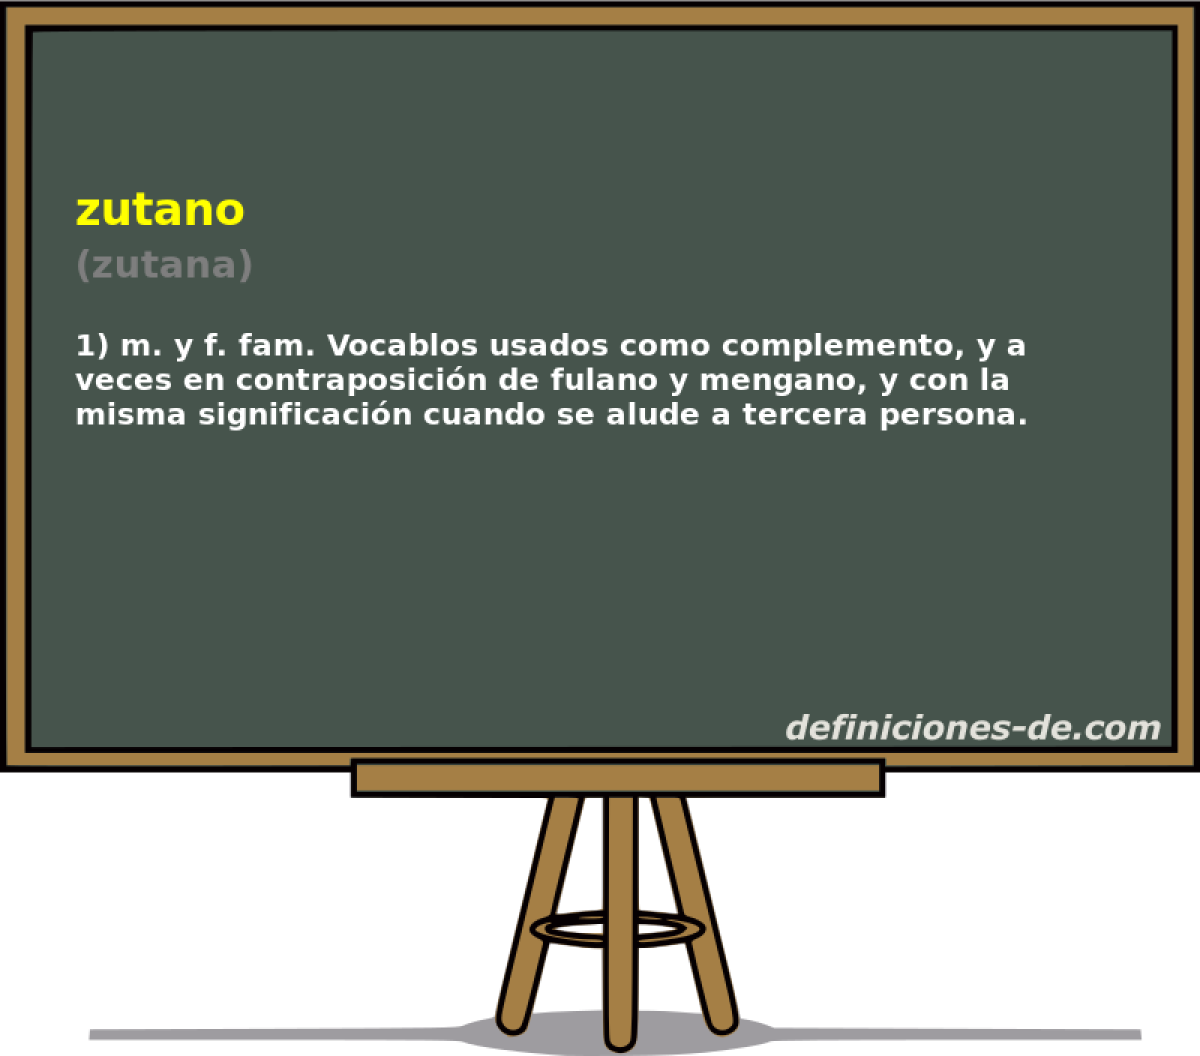 zutano (zutana)